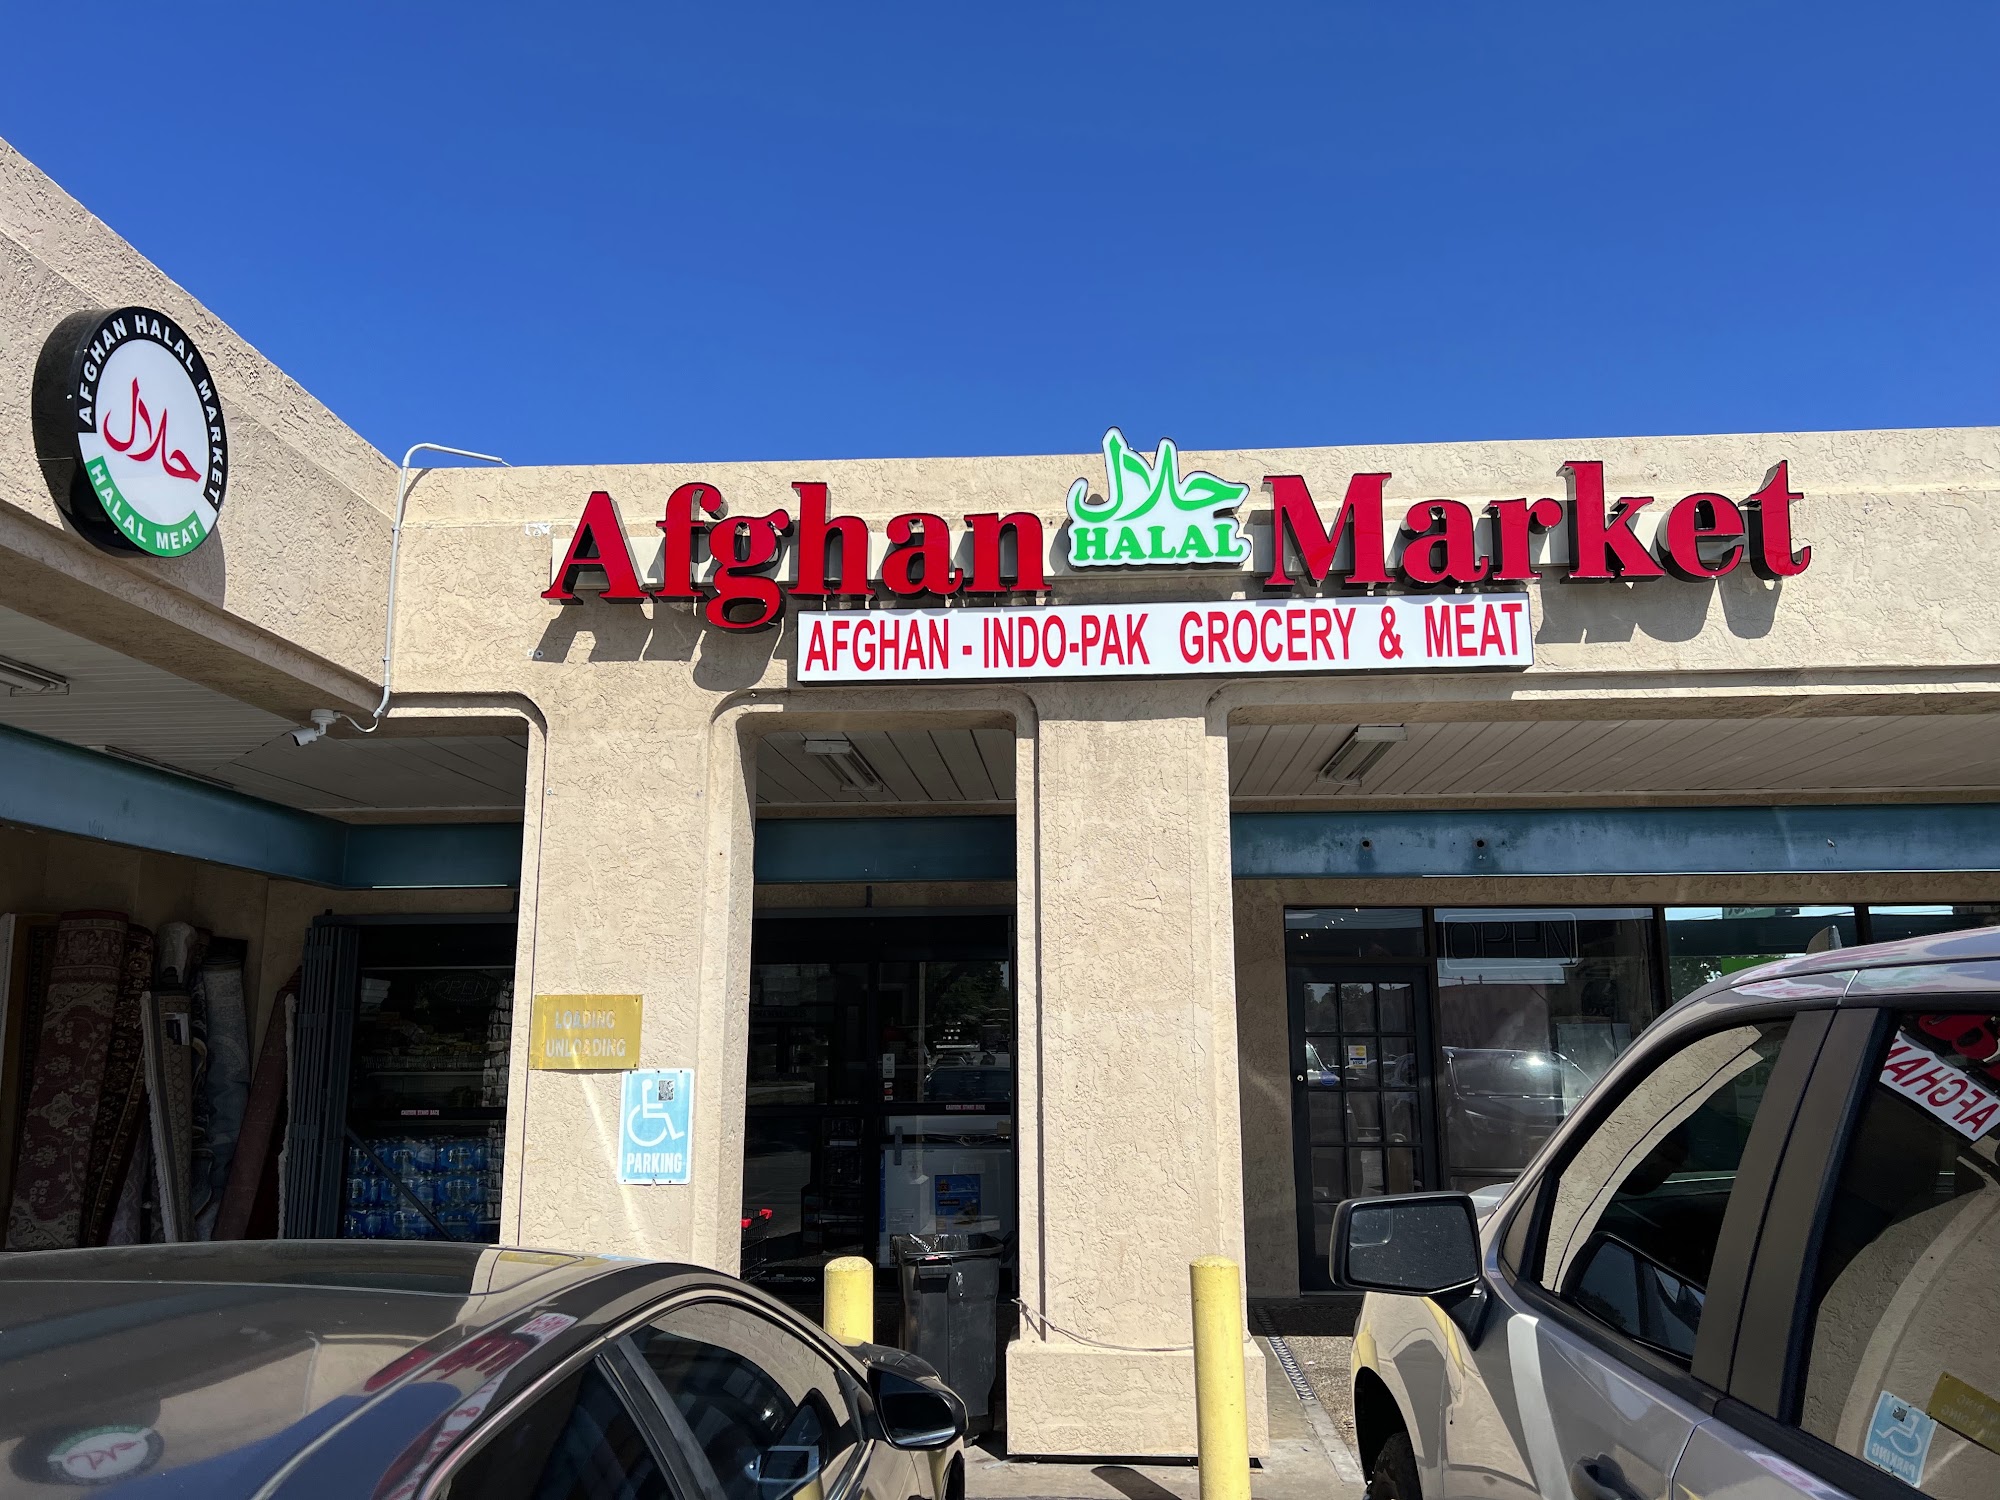 Afghan Halal Market Austin